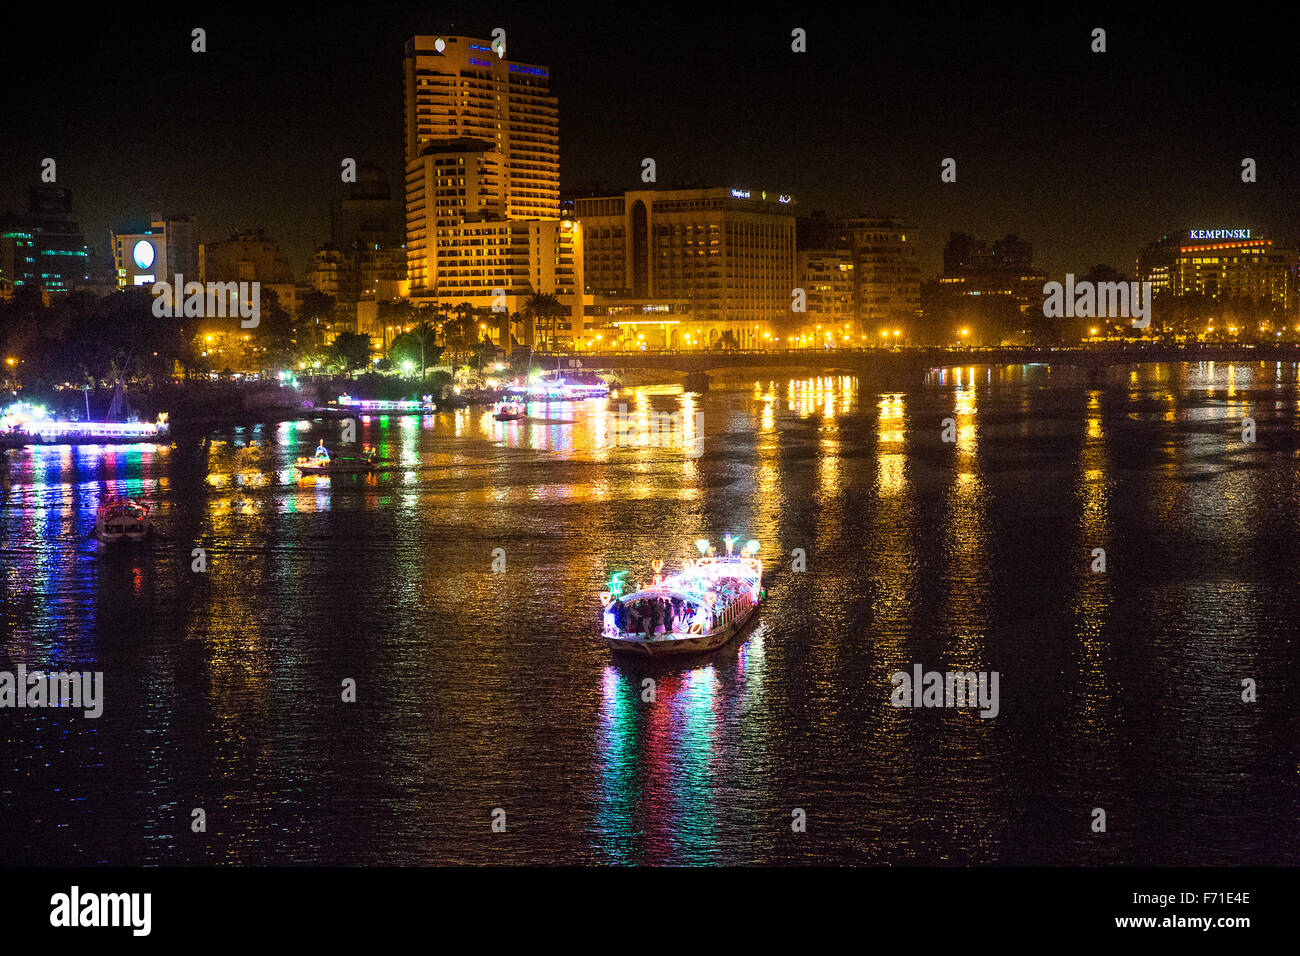 Le Caire, Nil, l'Egypte. Bateau naviguant dans la nuit dans la rivière du Nil Banque D'Images